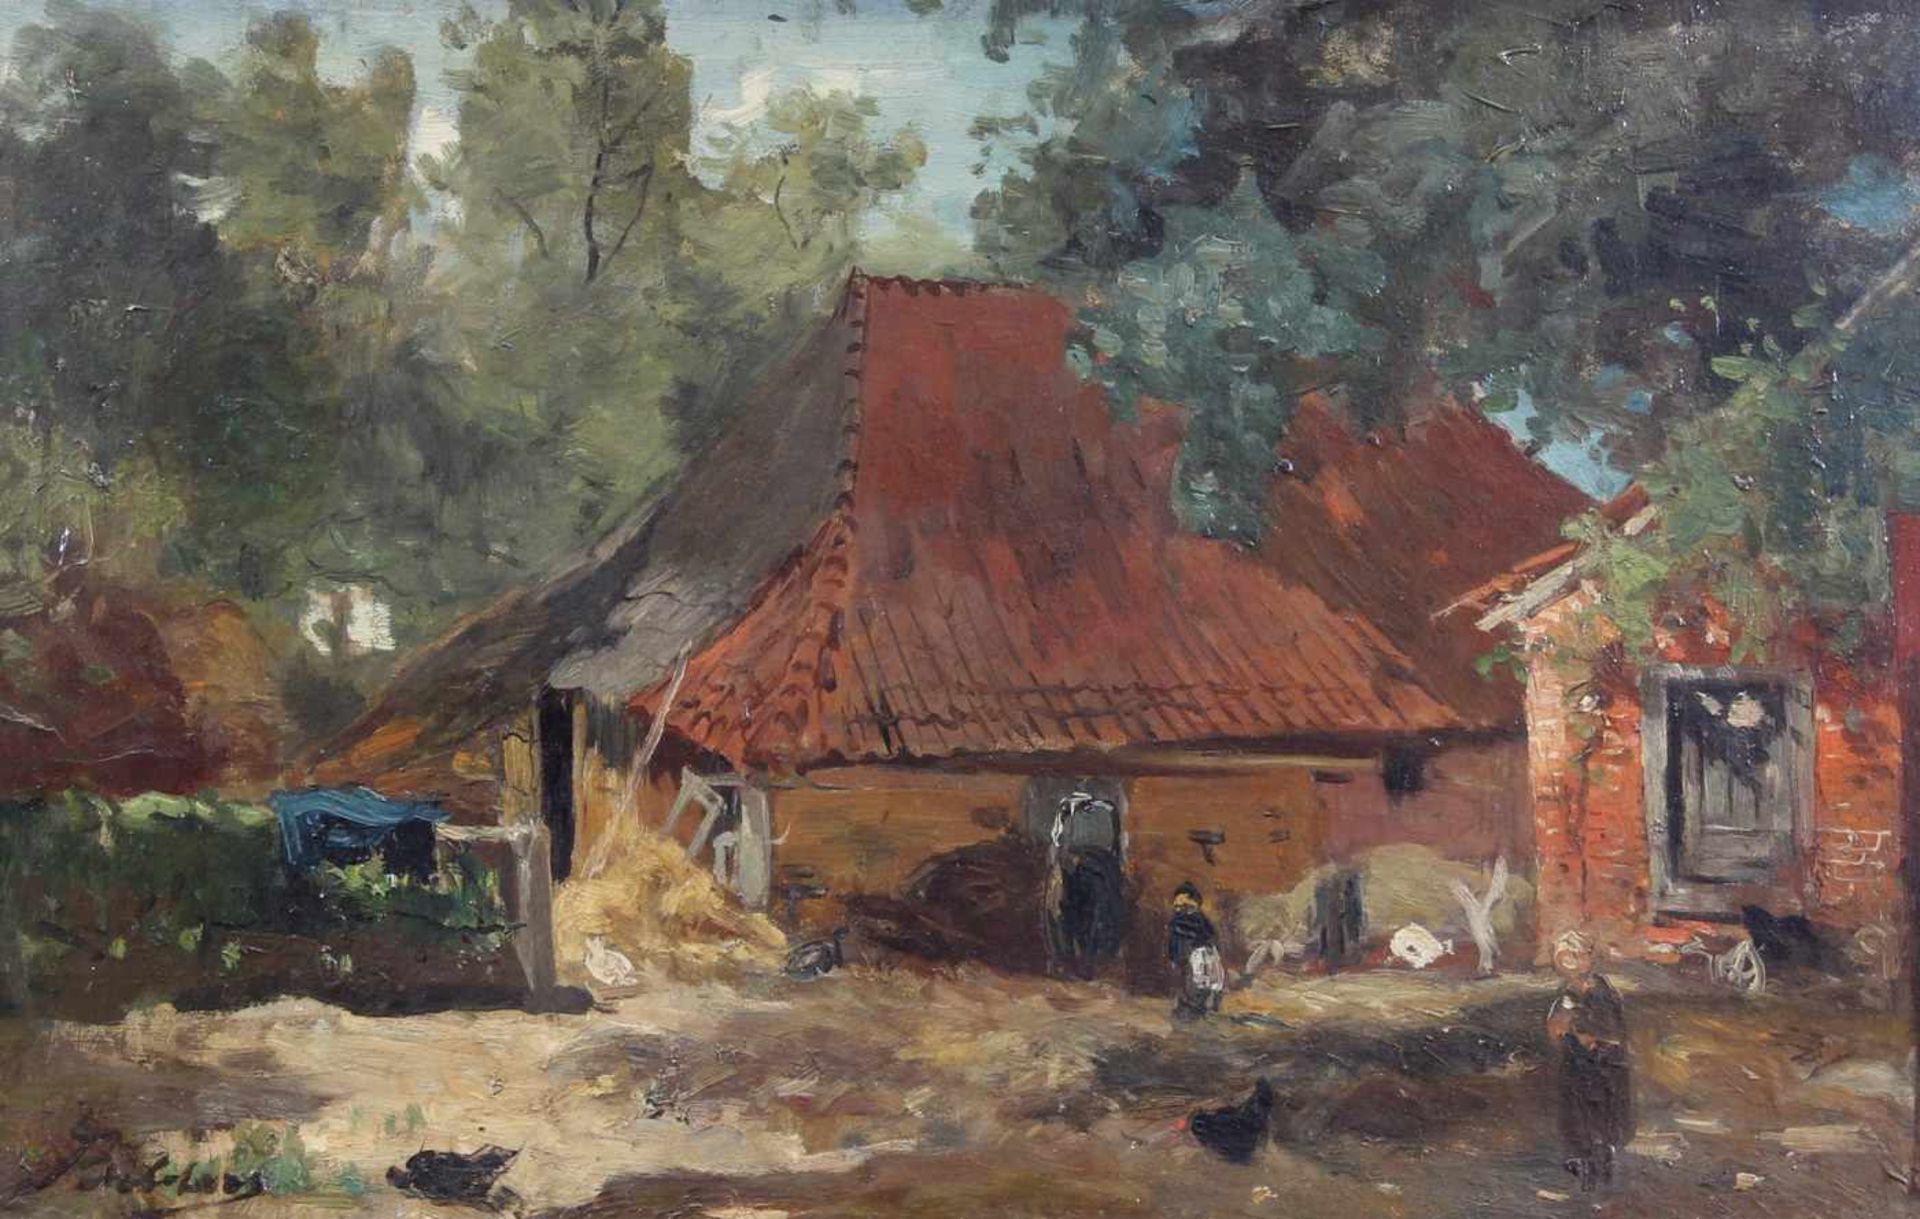 Bilders, Johannes Wernardus (1811 Utrecht - 1890 Oosterbeck, Landschaftsmaler), "Hinter dem